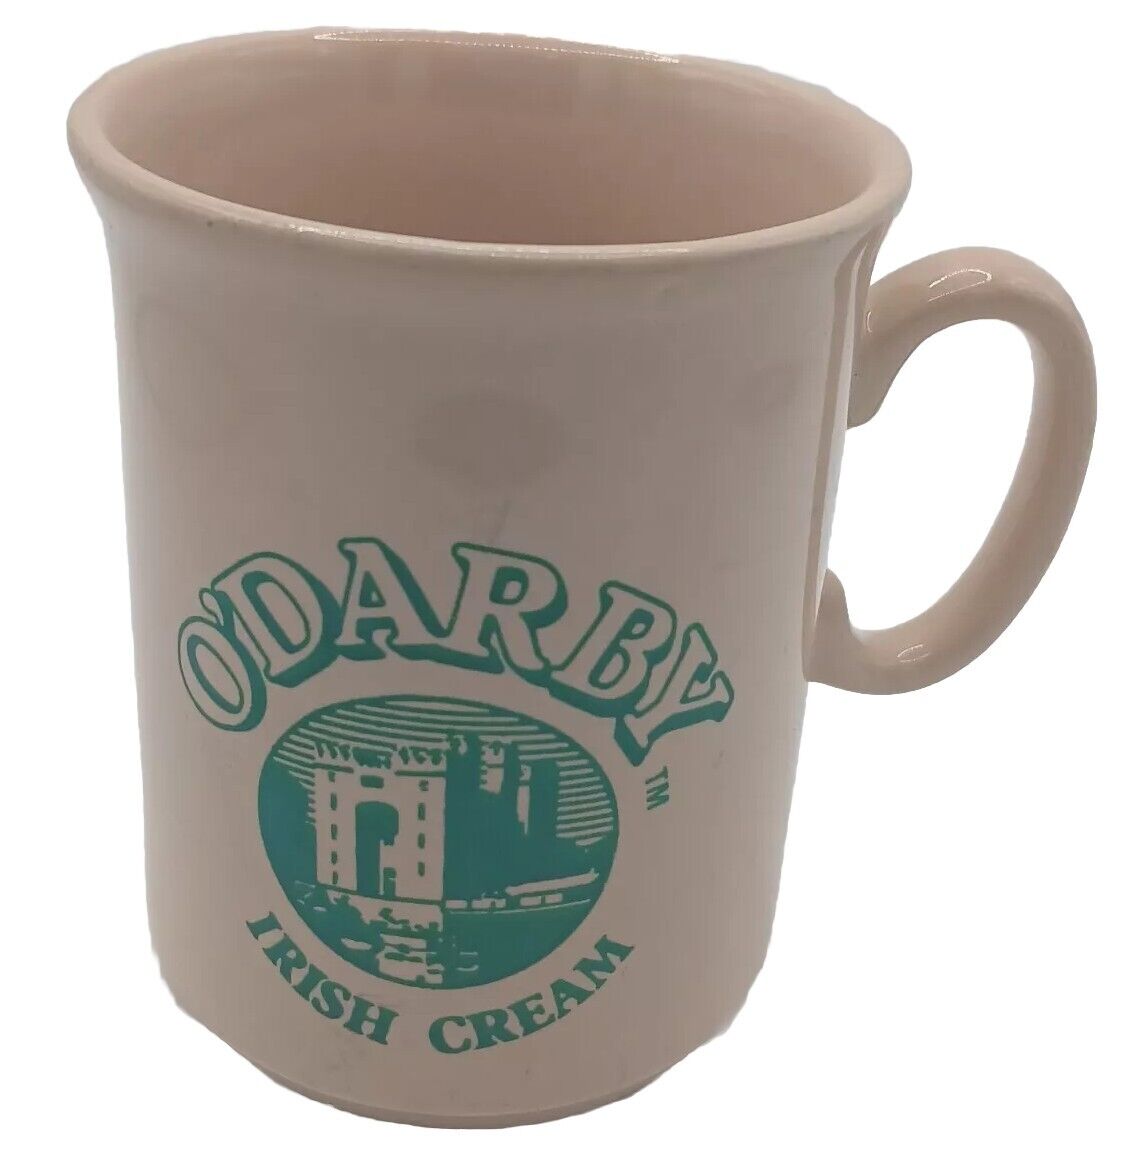 Vintage ODARBY Irish Cream Coffee Mug, England- Advertising 